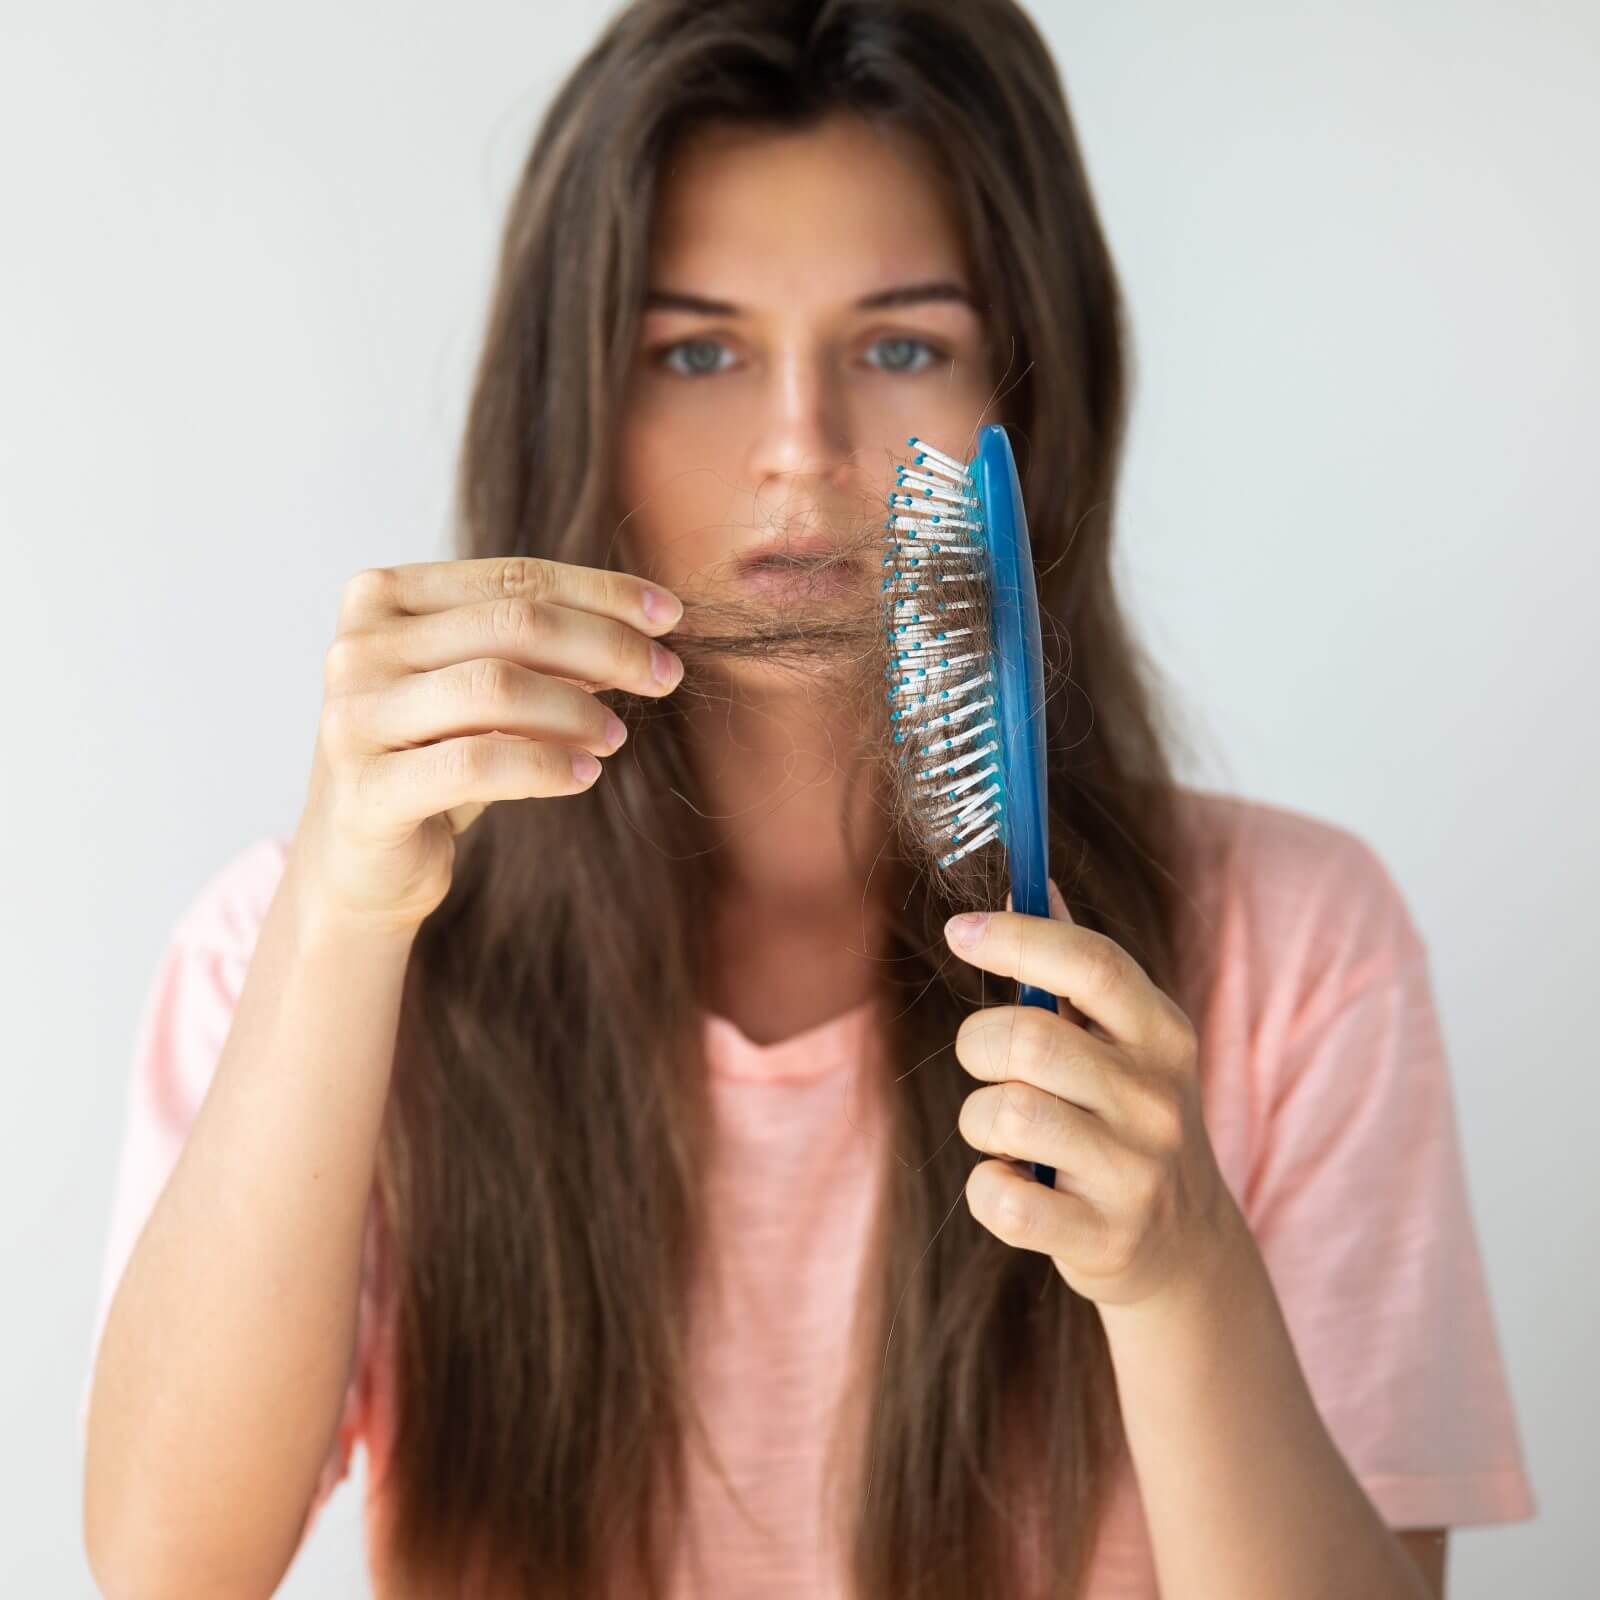 كيفية علاج نقص مخزون الحديد وتساقط الشعر؟ 